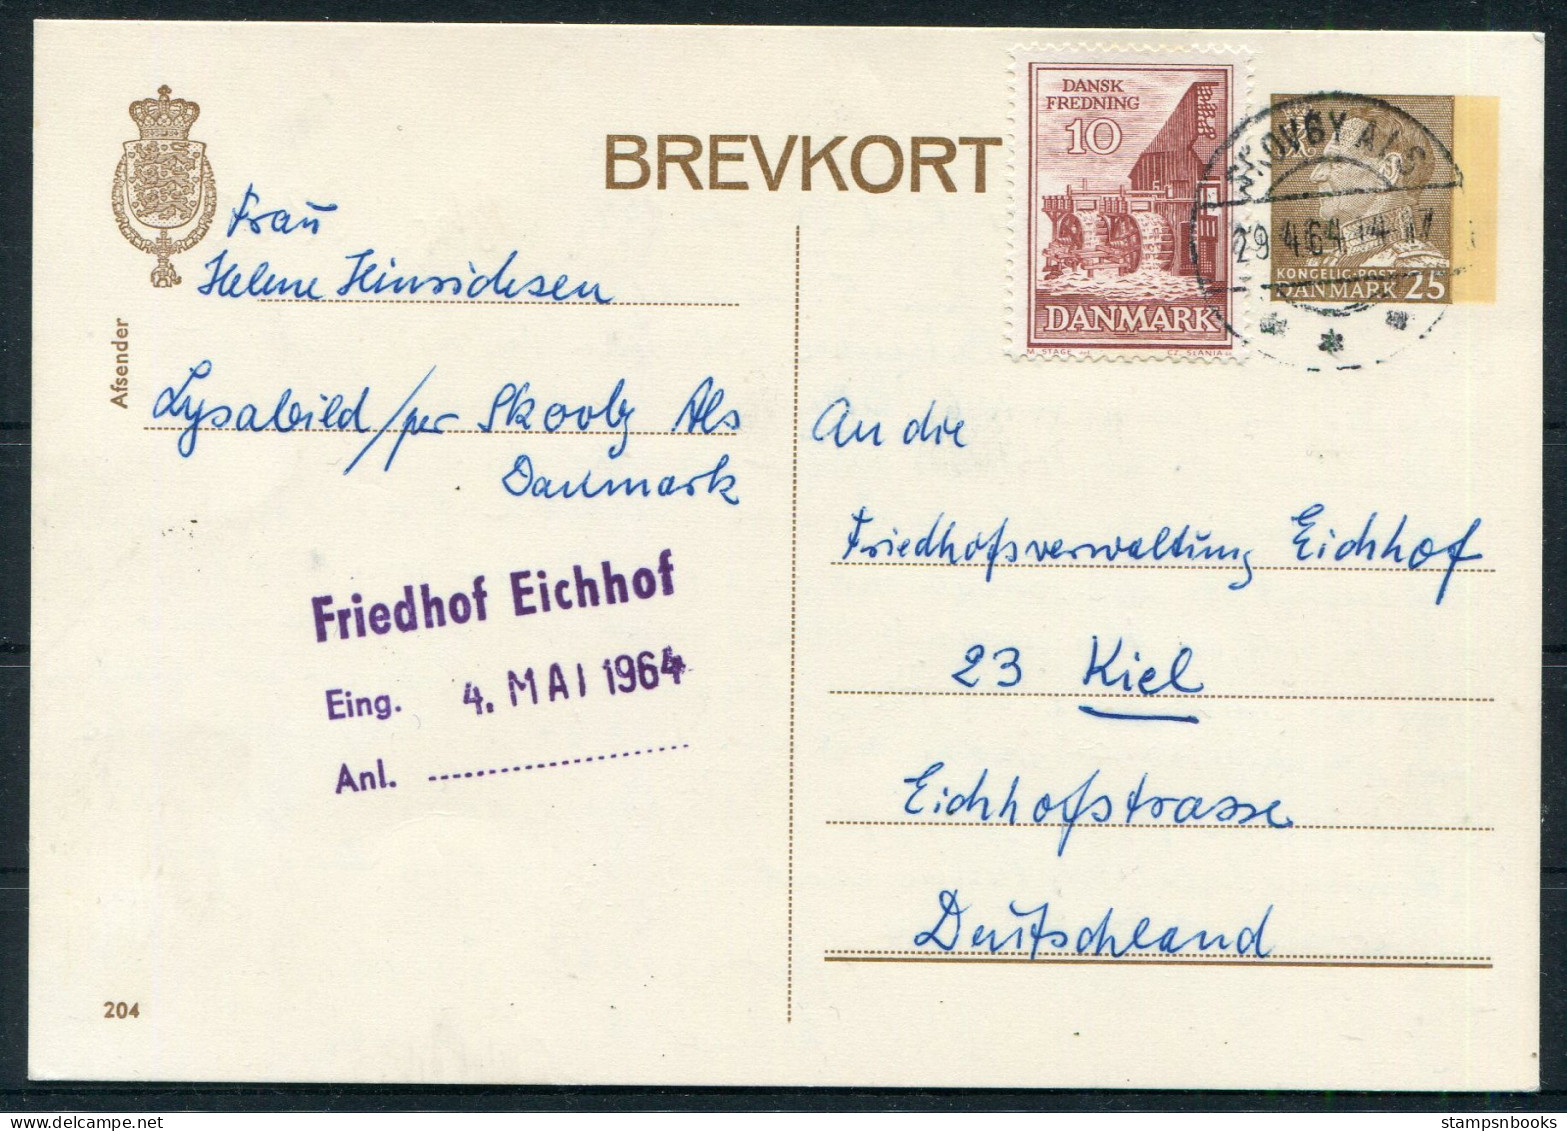 1964 Denmark Uprated 25ore Stationery Postcard (204) Skovby Als - Friedhof Eichhof Cemetery Kiel Germany - Briefe U. Dokumente